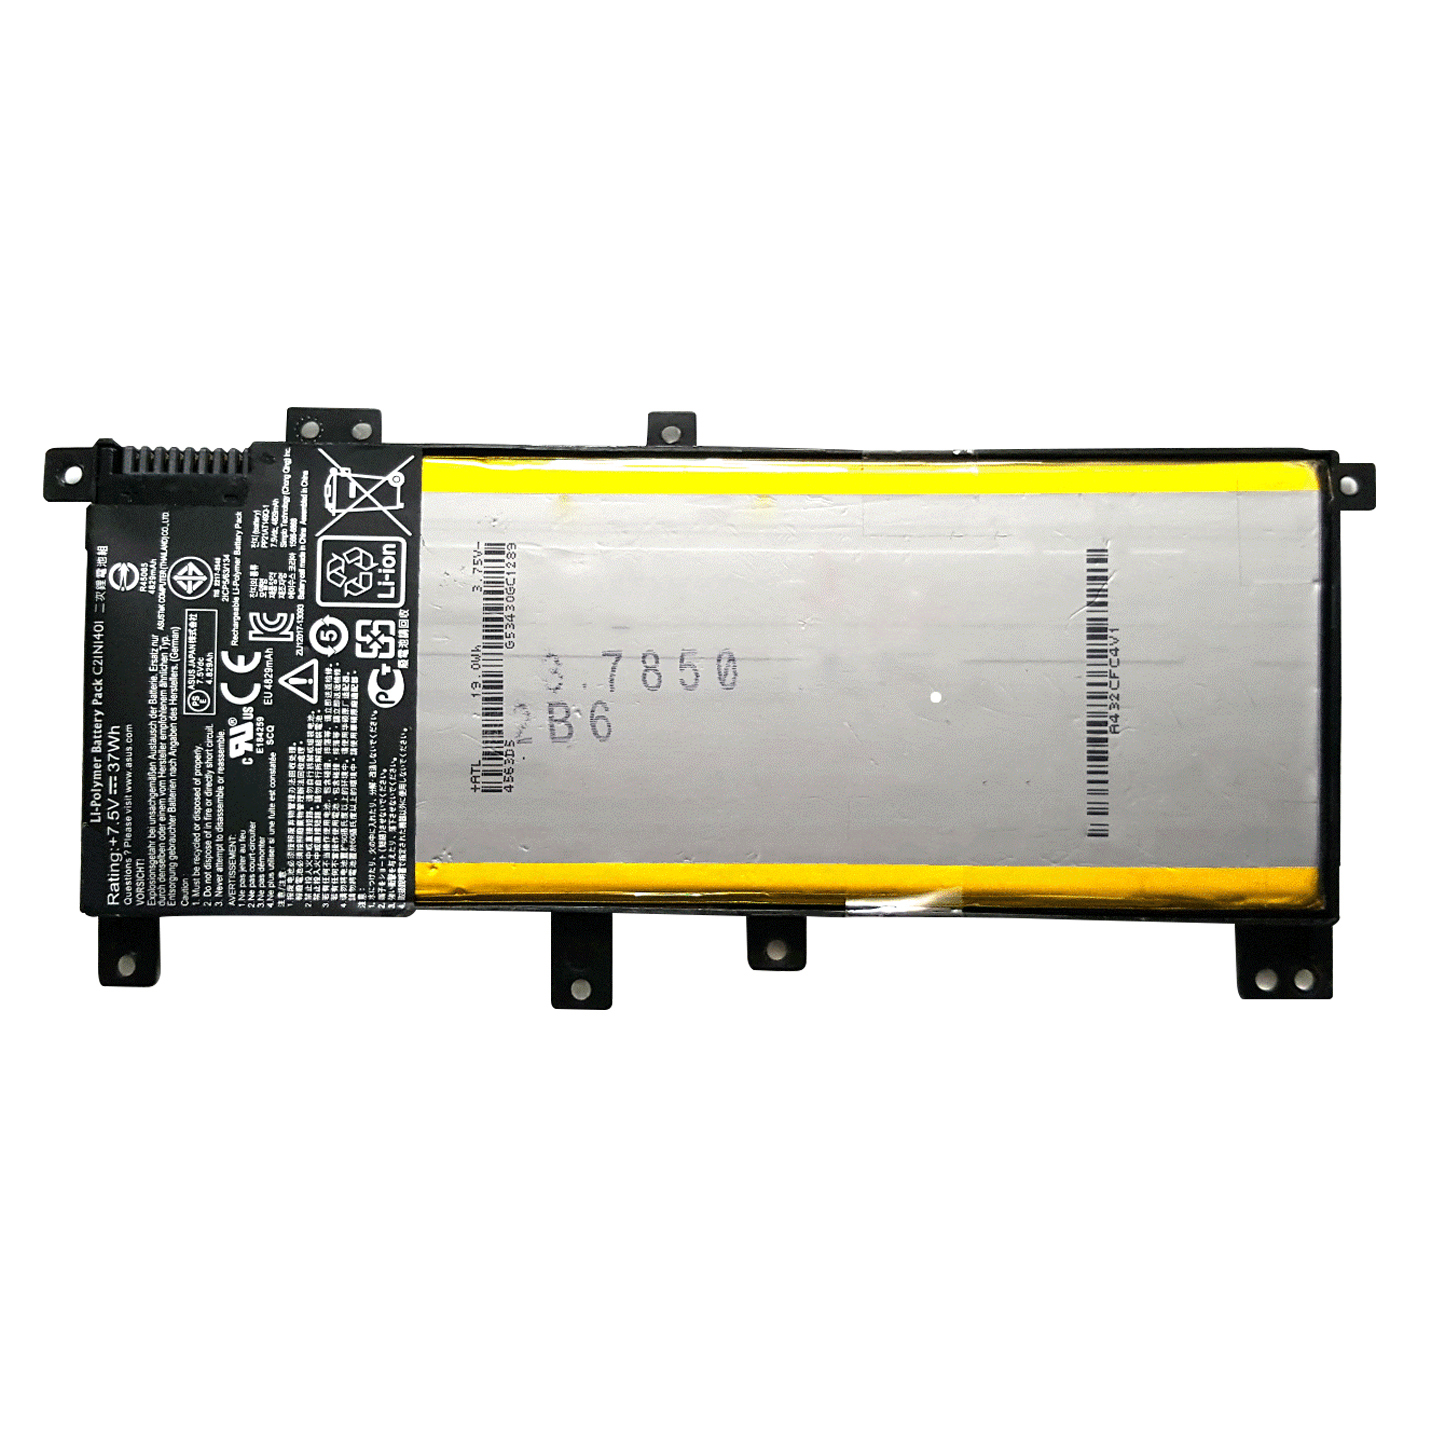 Pin dành cho Laptop Asus X555 zin x554 k555 f555 - Hàng nhập khẩu